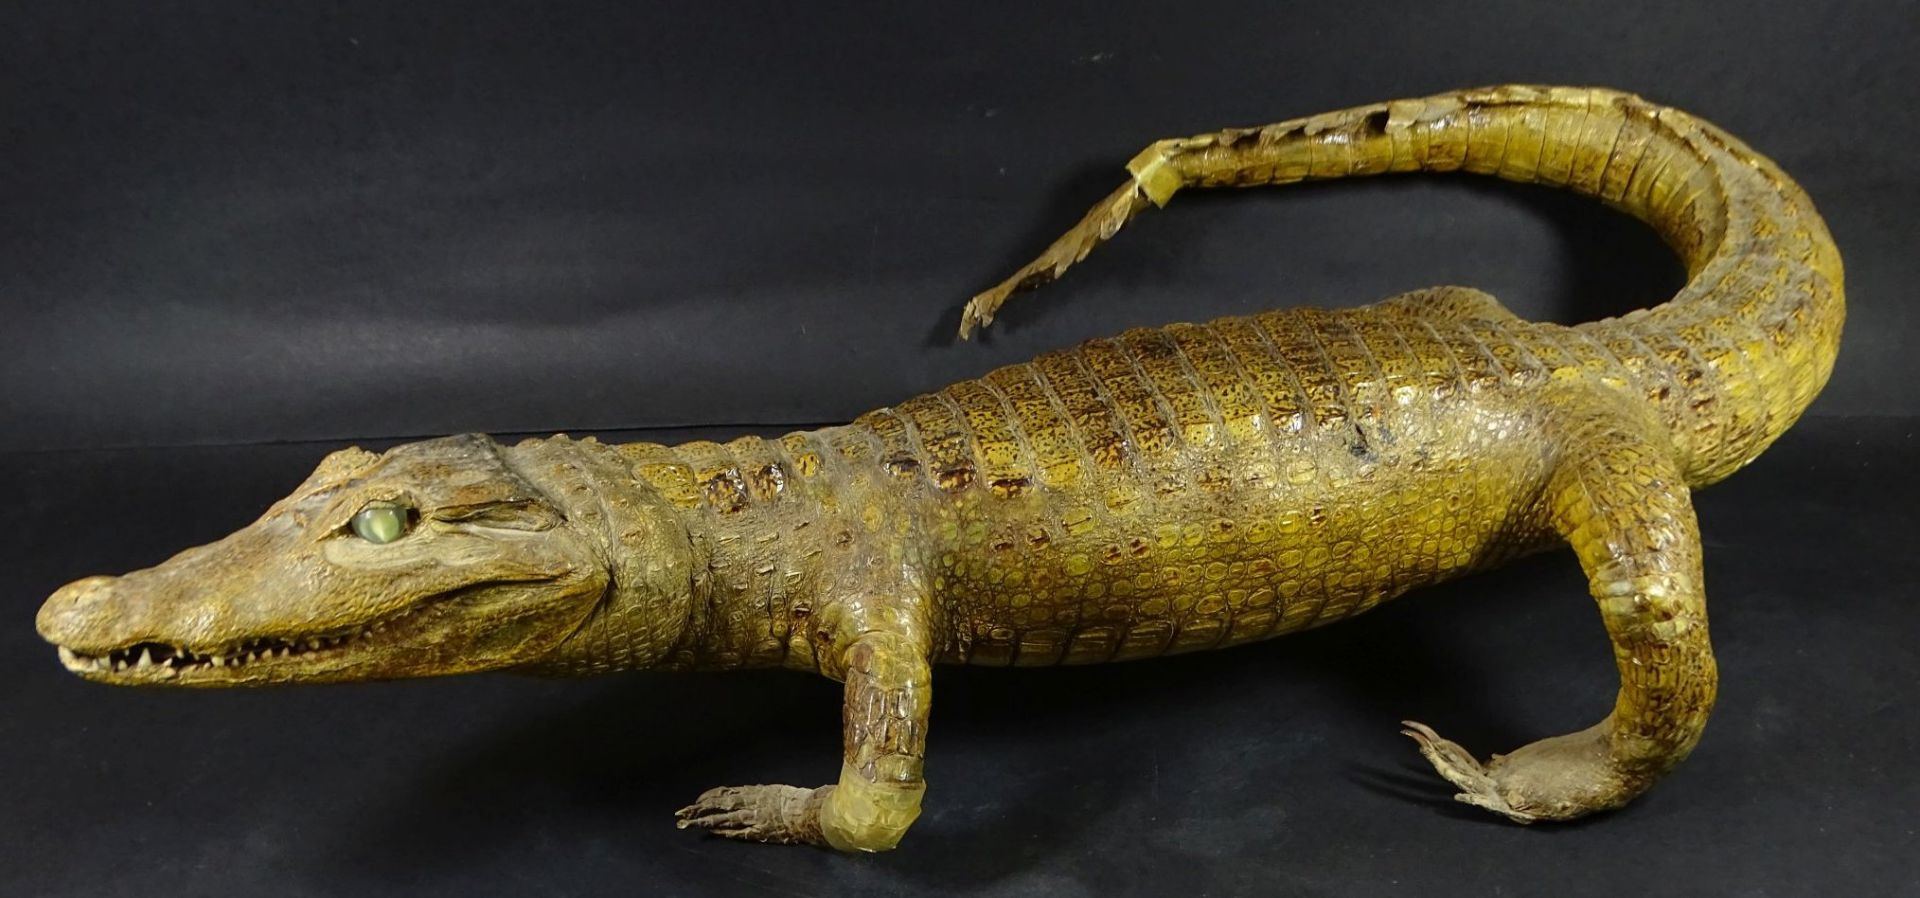 präparierter Alligator, Alters-u. Gebrauchsspuren, L-67 cm, tw. Klebestelle- - -22.61 % buyer's